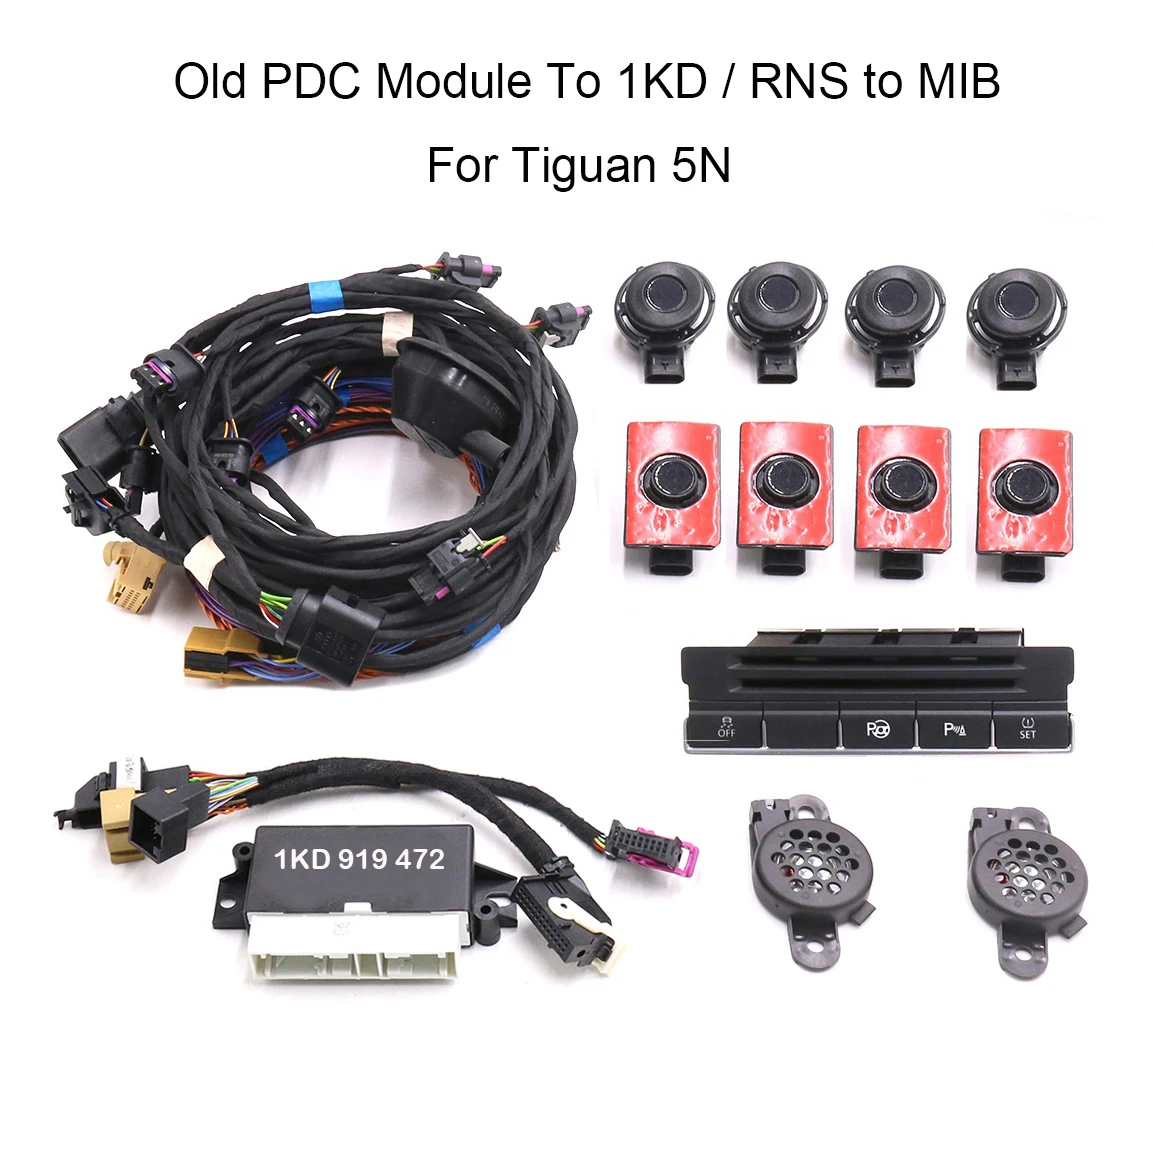 Для Tiguan 5N Обновите Старый модуль PDC с 1KD / RNS до MIB Park Pilot Спереди и сзади 8 Датчиков 8K Parking PDC OPS Изображение 0